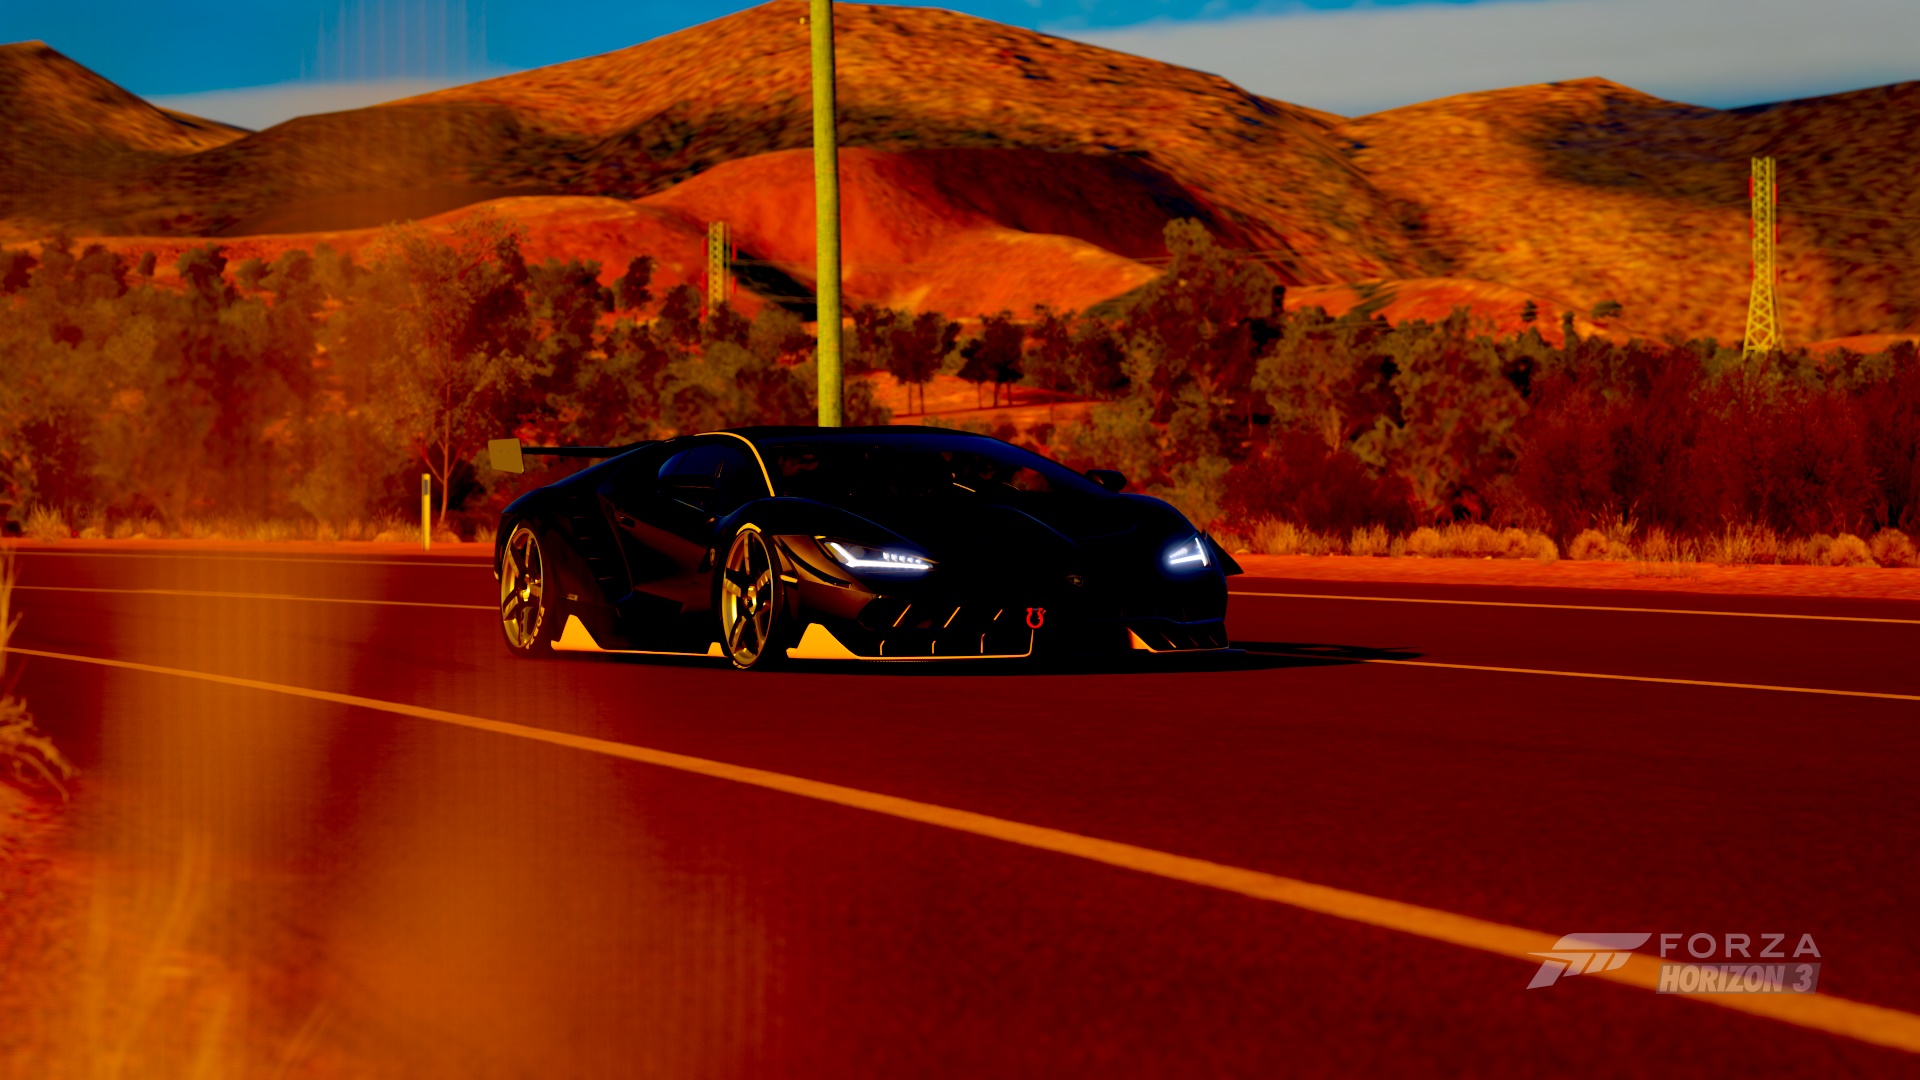 Download mobile wallpaper Car, Lamborghini Centenario, Video Game, Forza Horizon 3, Forza for free.